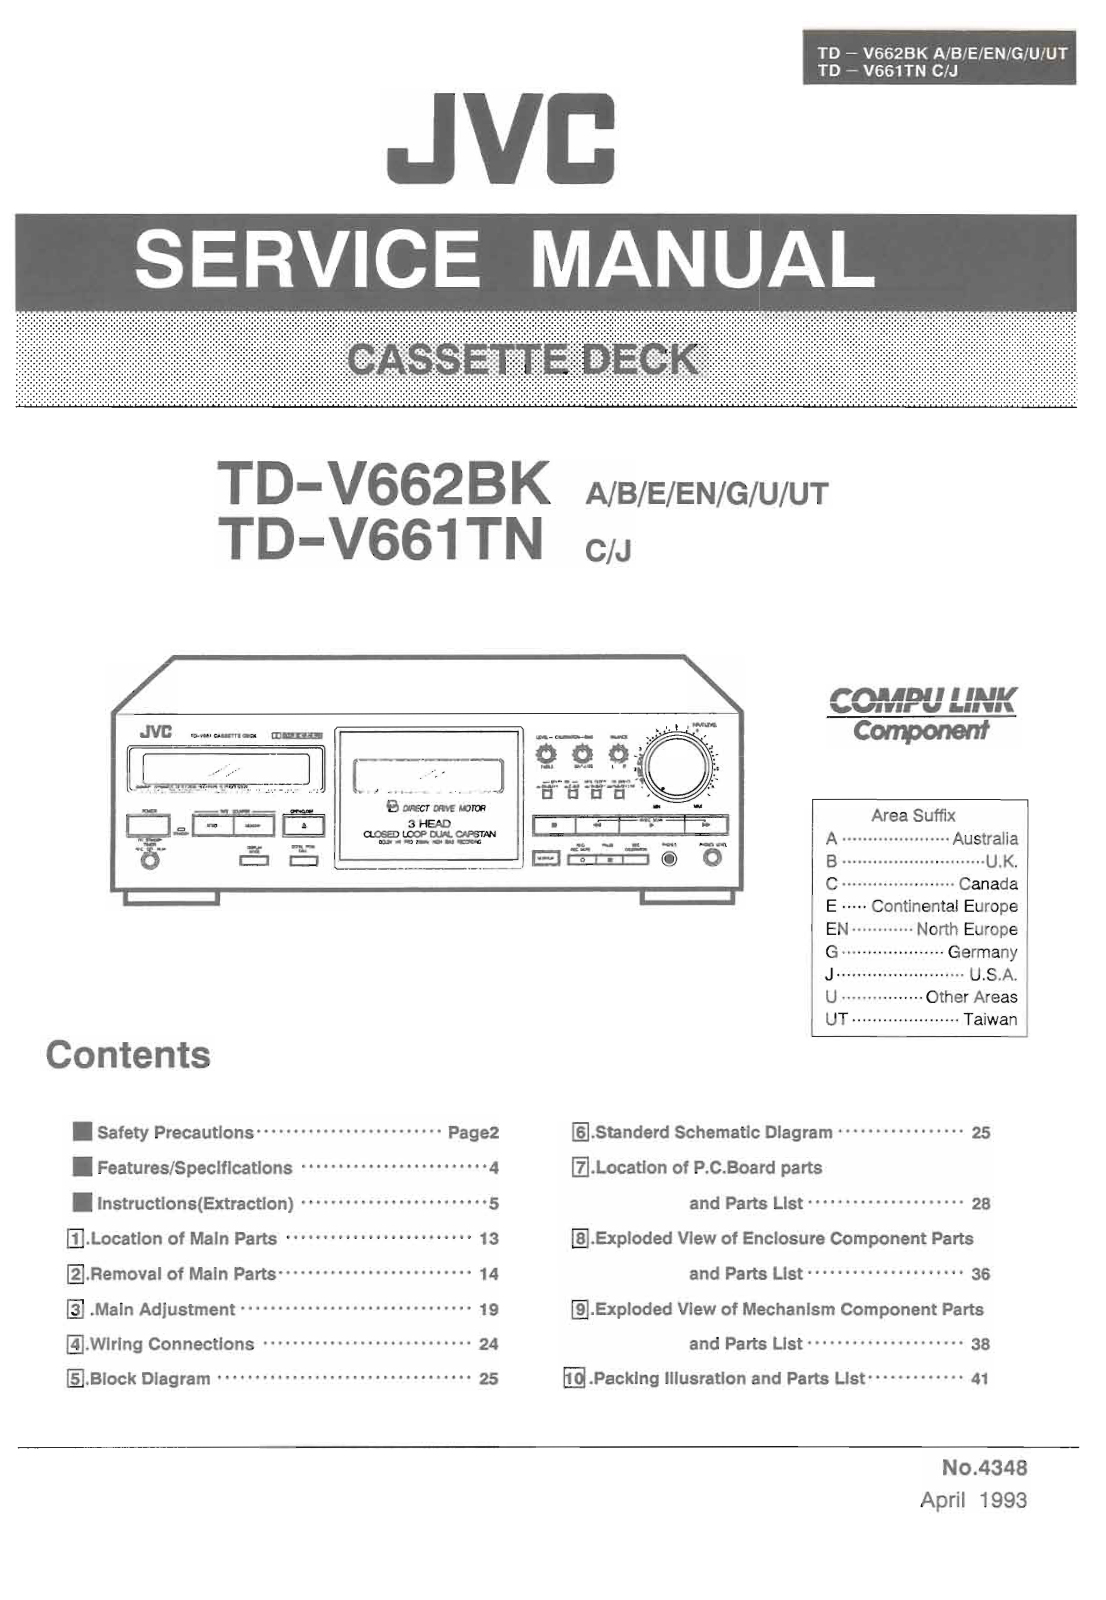 Jvc TD-V662-BK, TD-V661-TN Service Manual